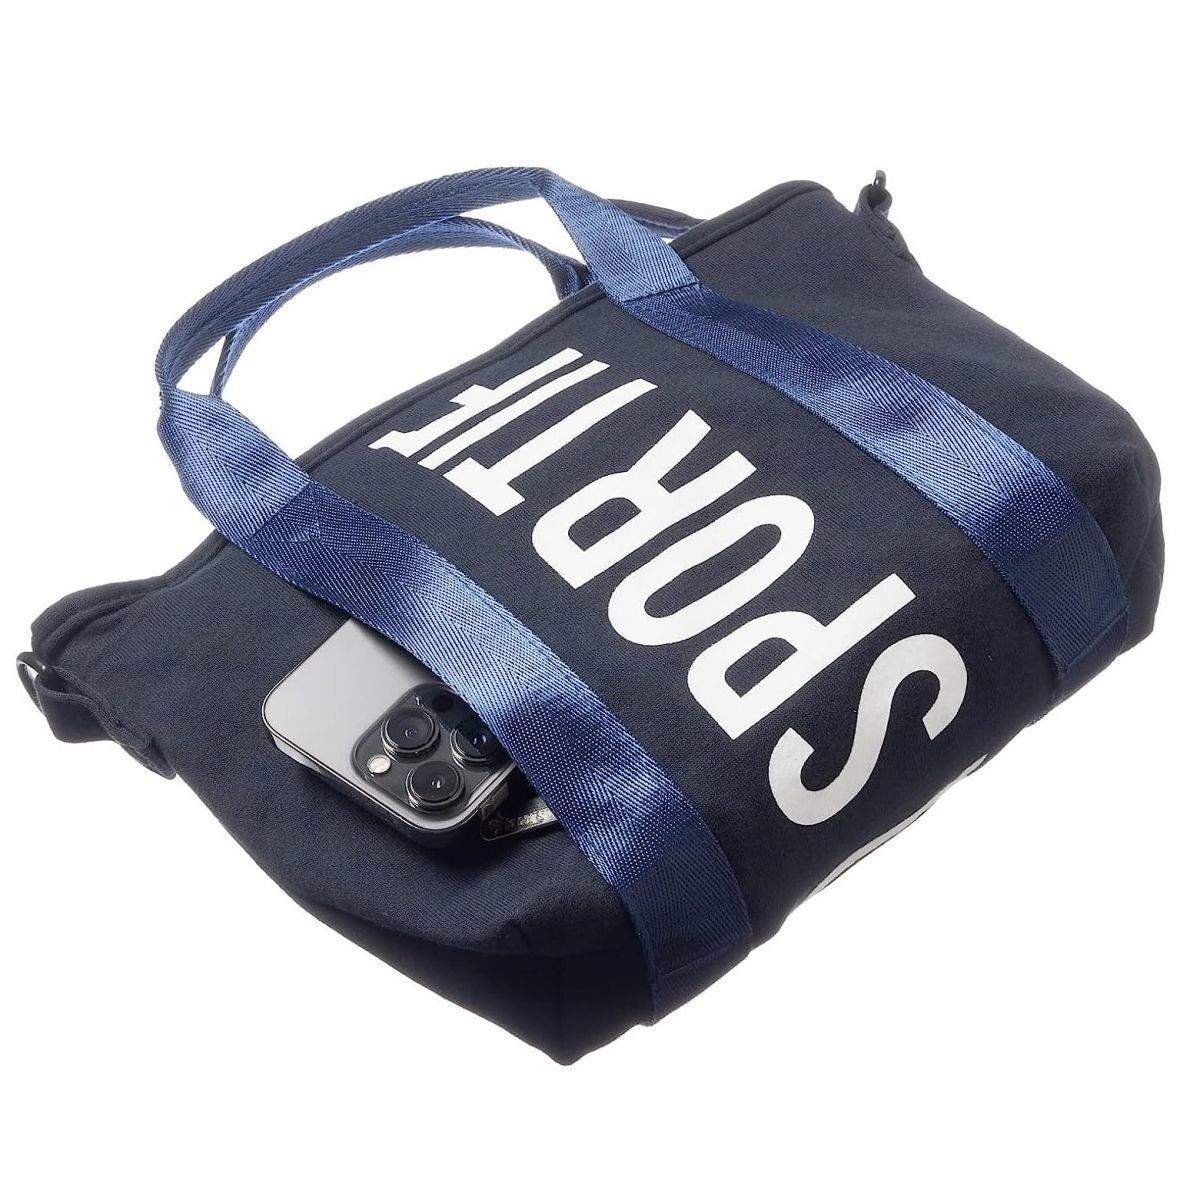 * Le Coq le coq sportif новый товар дезодорация антибактериальный 2WAYro ракушка Logo принт плечо большая сумка сумка BAG темно-синий [362900151N] один шесть *QWER